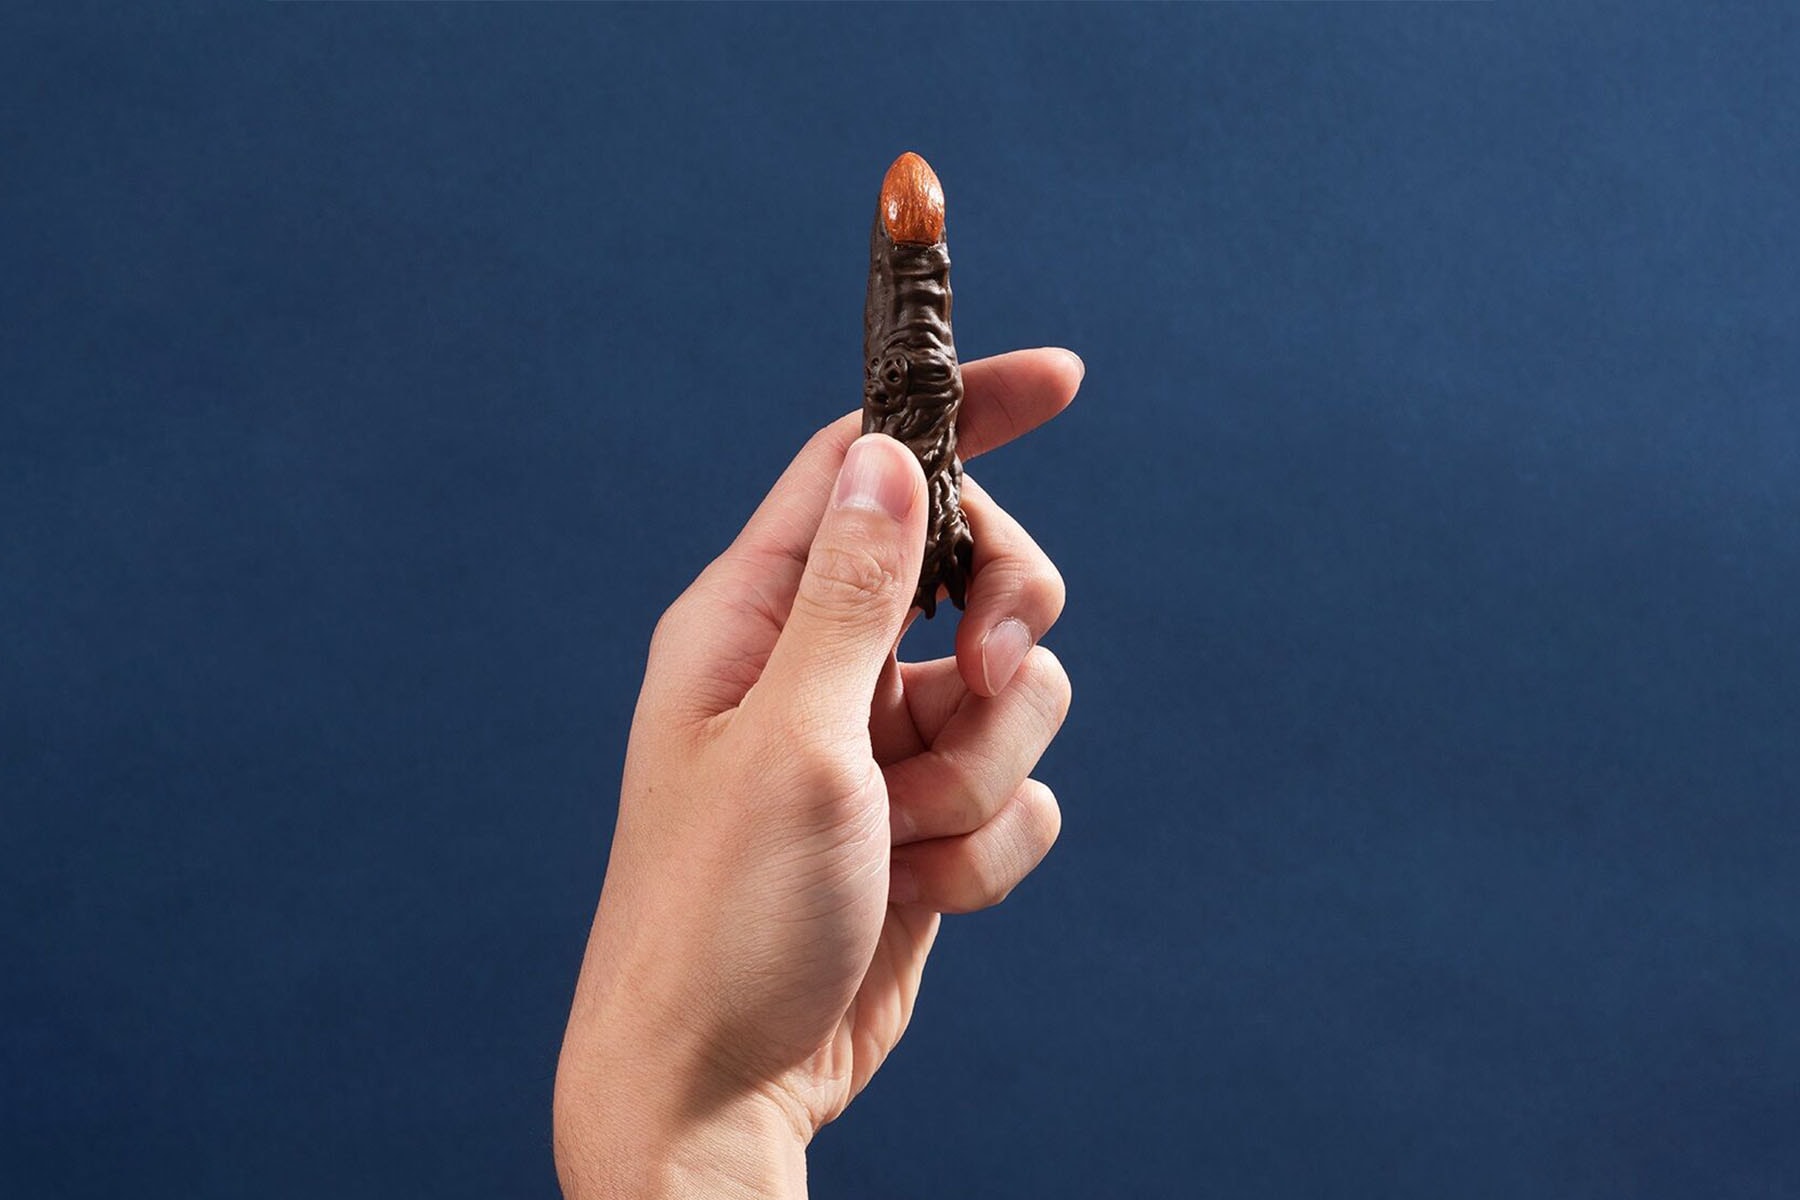 '주술회전' 속 '료멘 스쿠나의 손가락' 만들 수 있는 초콜릿 몰드 출시, 초콜릿 트레이, 이타도리 유지, 특급 주물